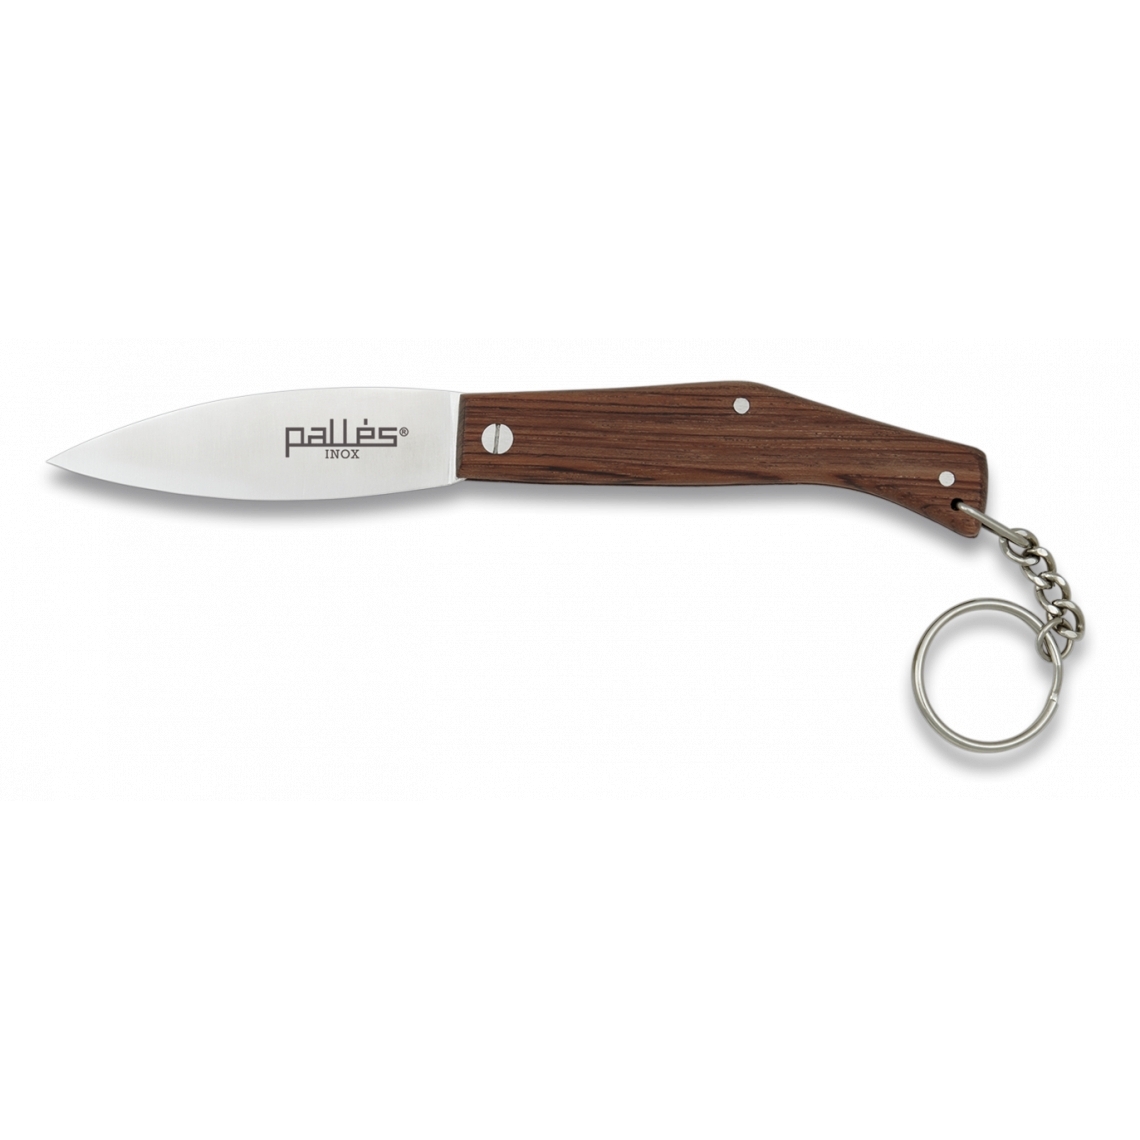 Nůž zavírací Pallés Nº000 Keyring Wood - hnědý-stříbrný